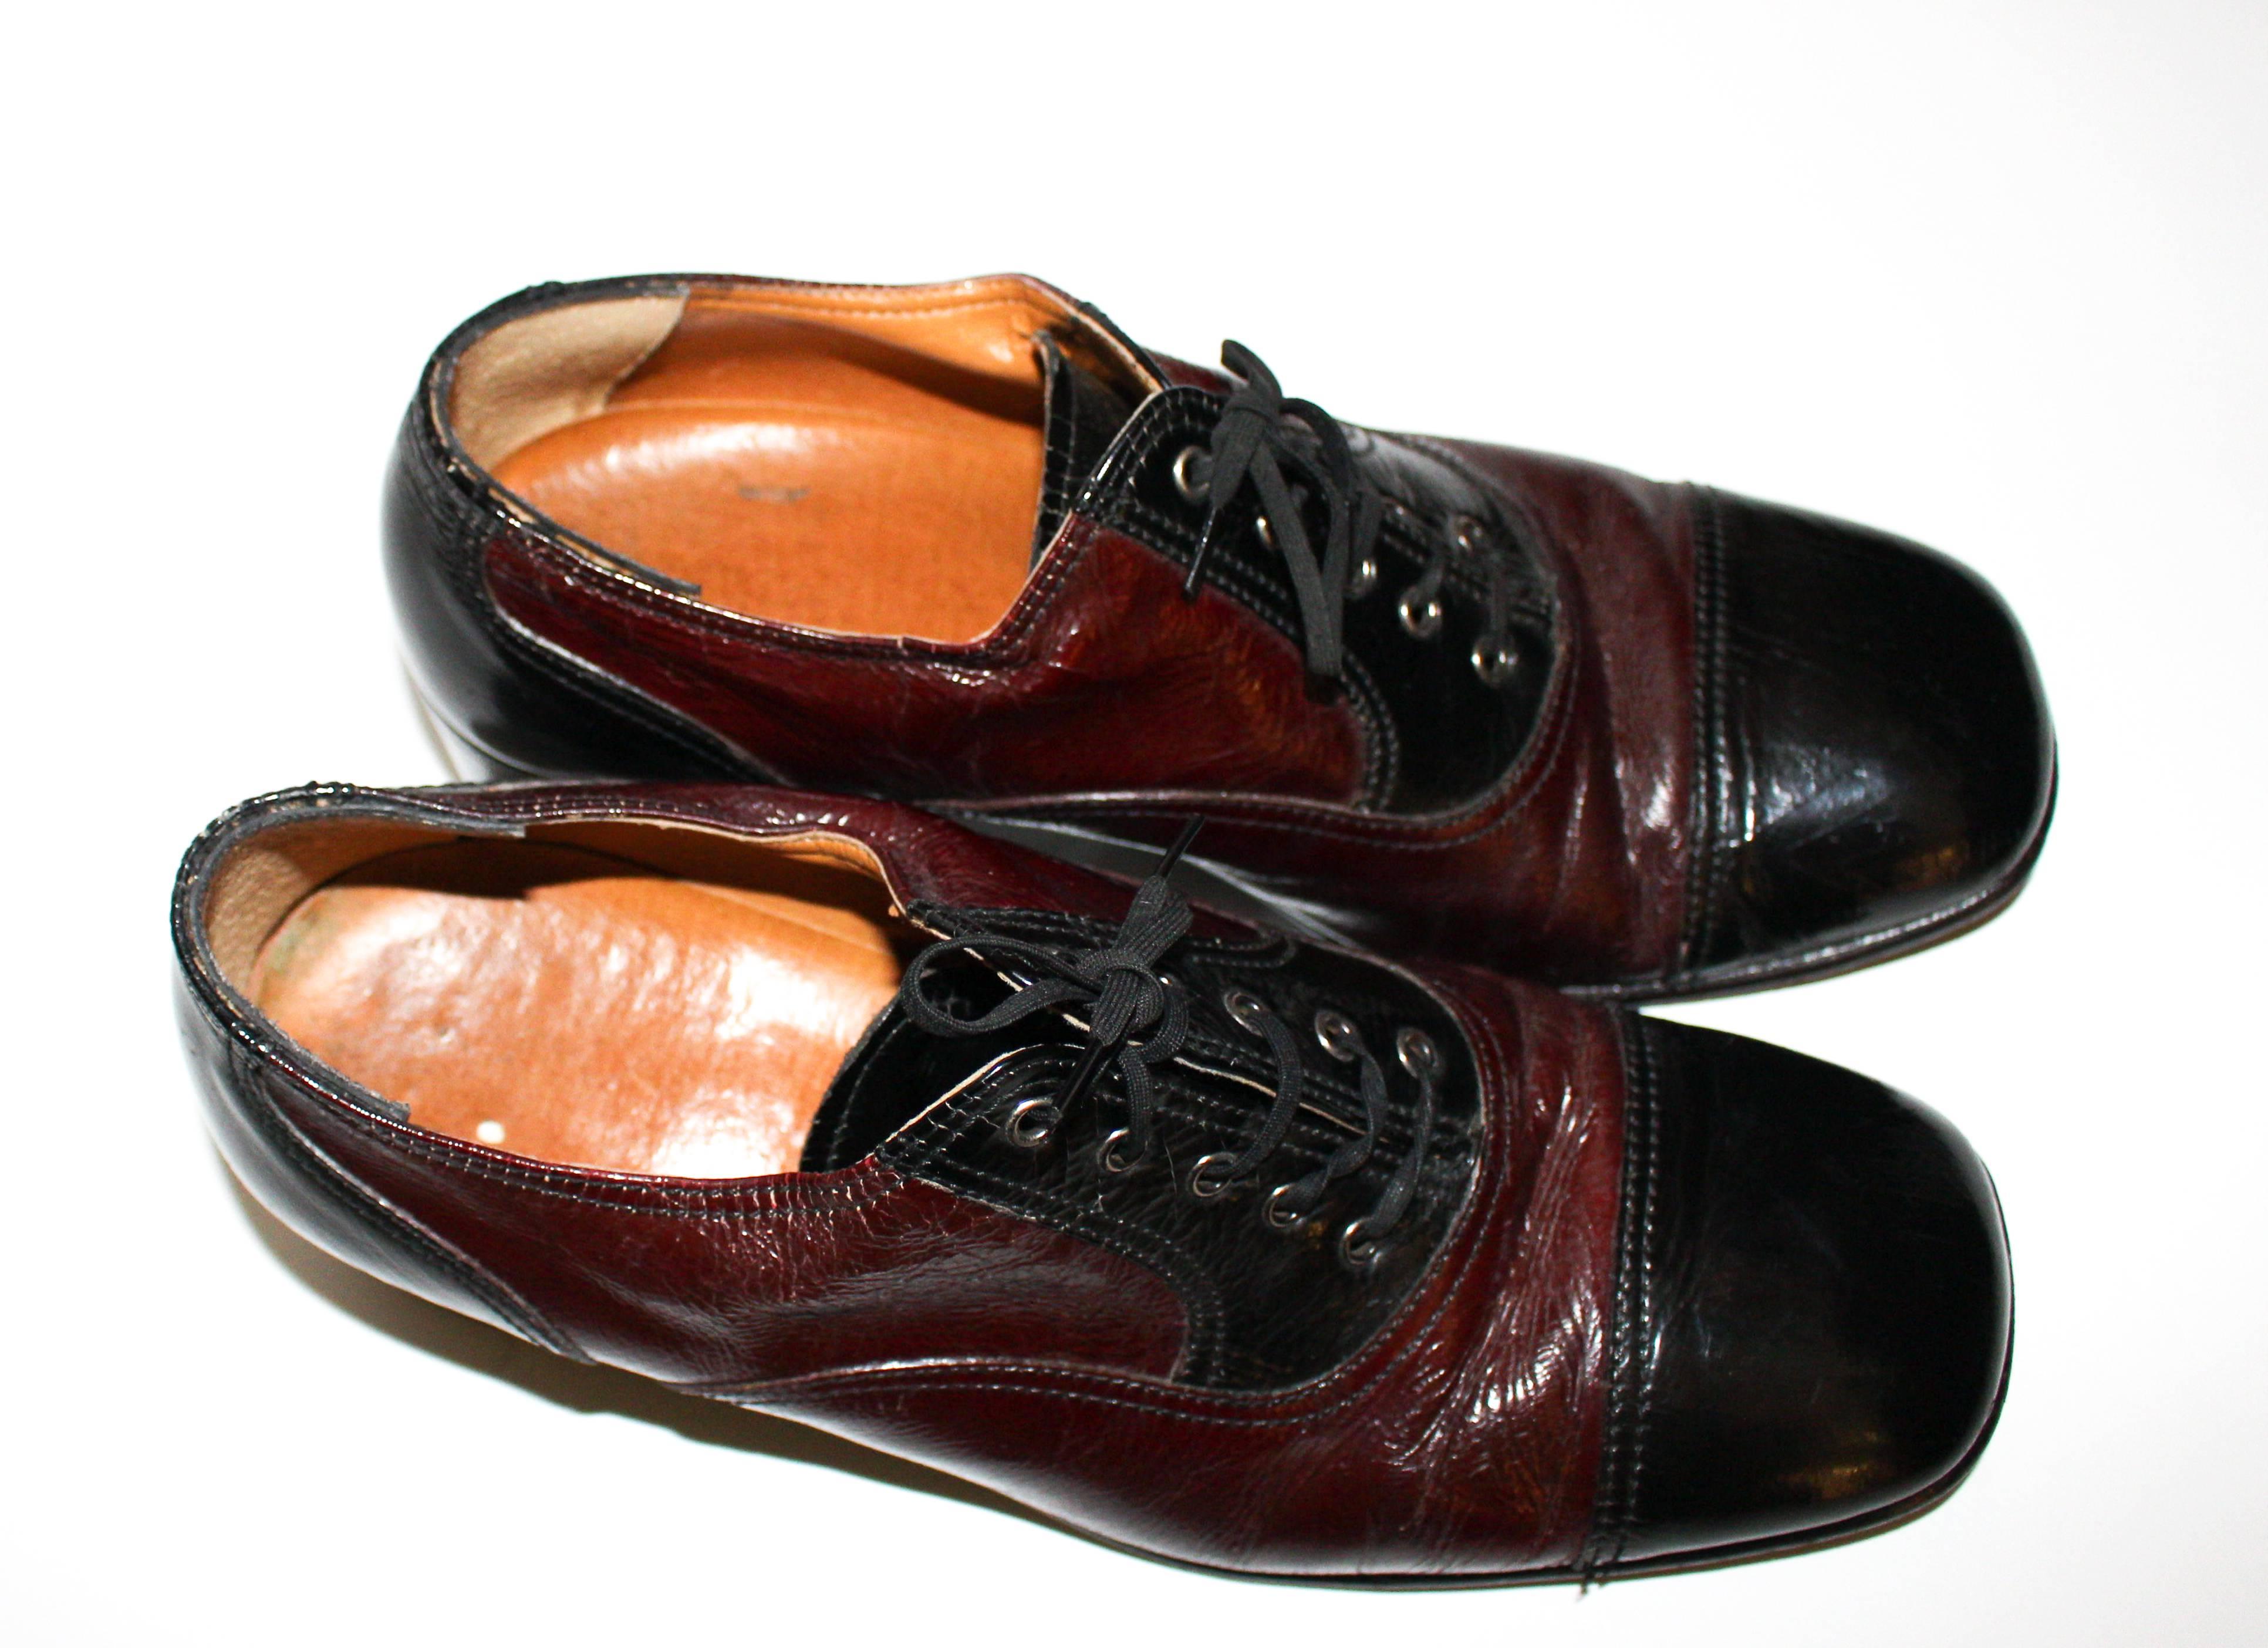 1970 shoes